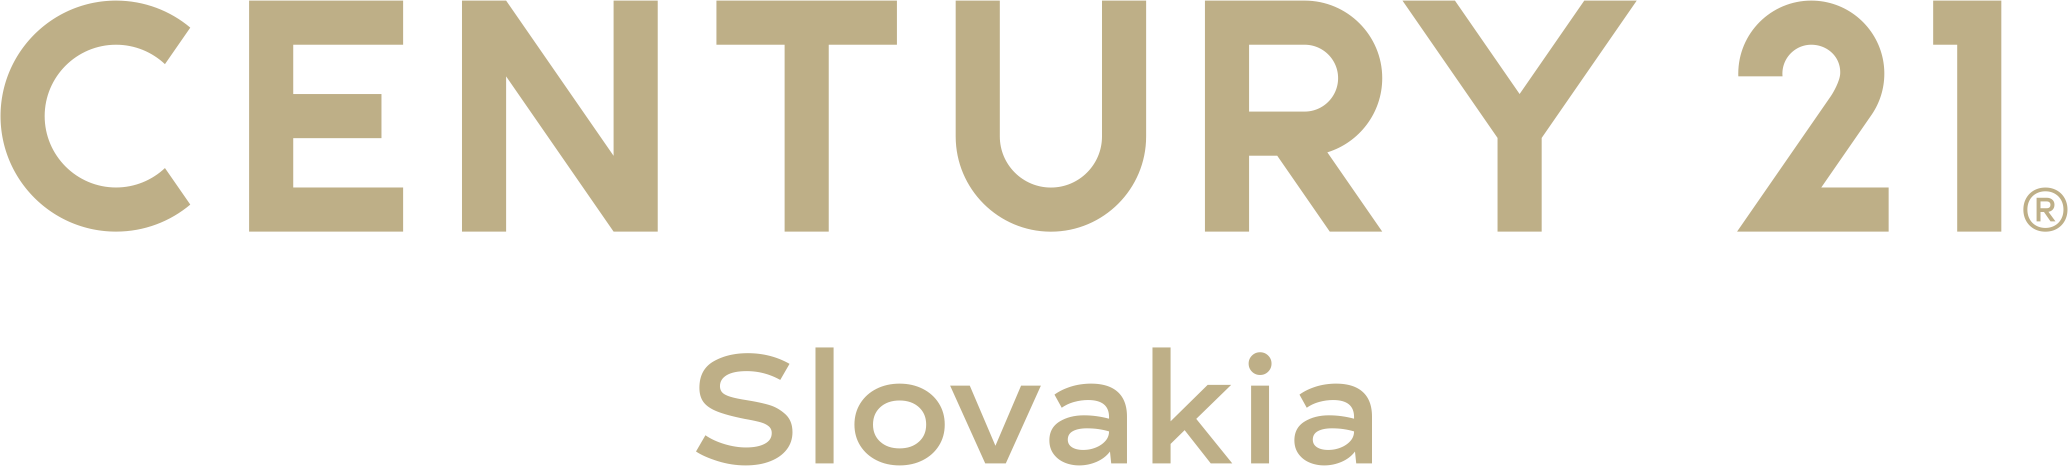 Century 21 Slovakia logo